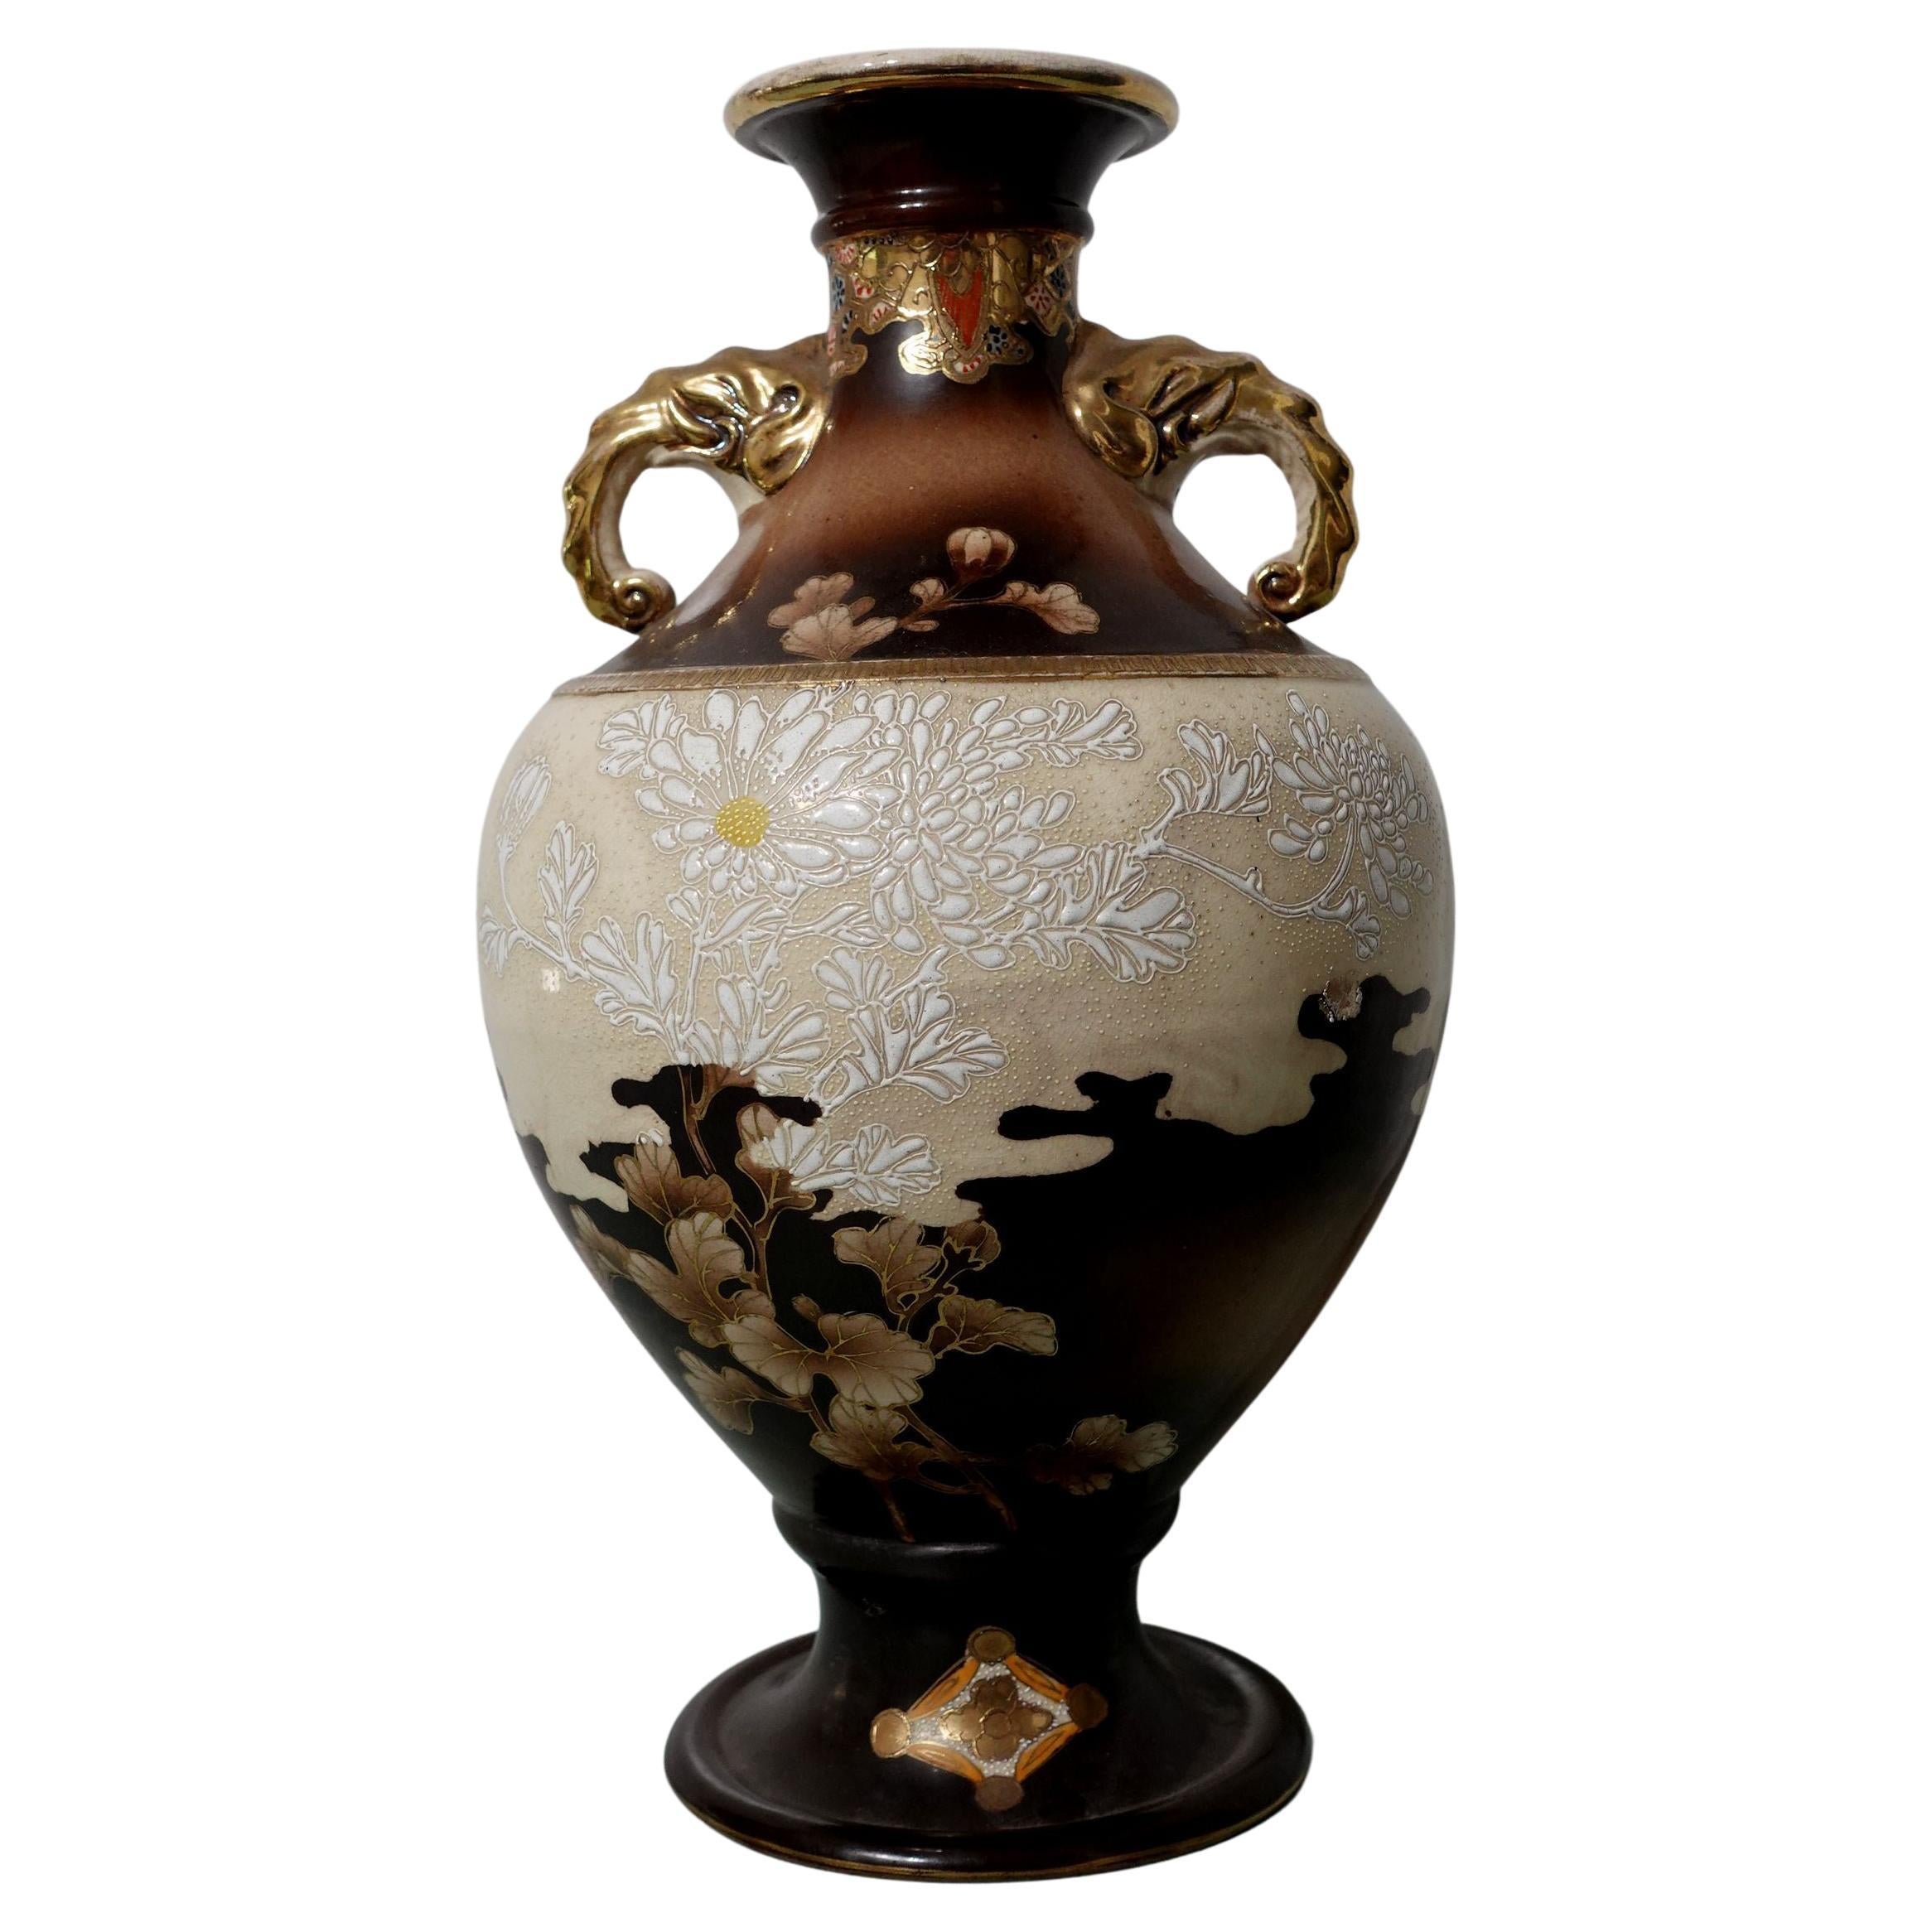 Grand vase japonais Art Nouveau de style Satsuma, signé